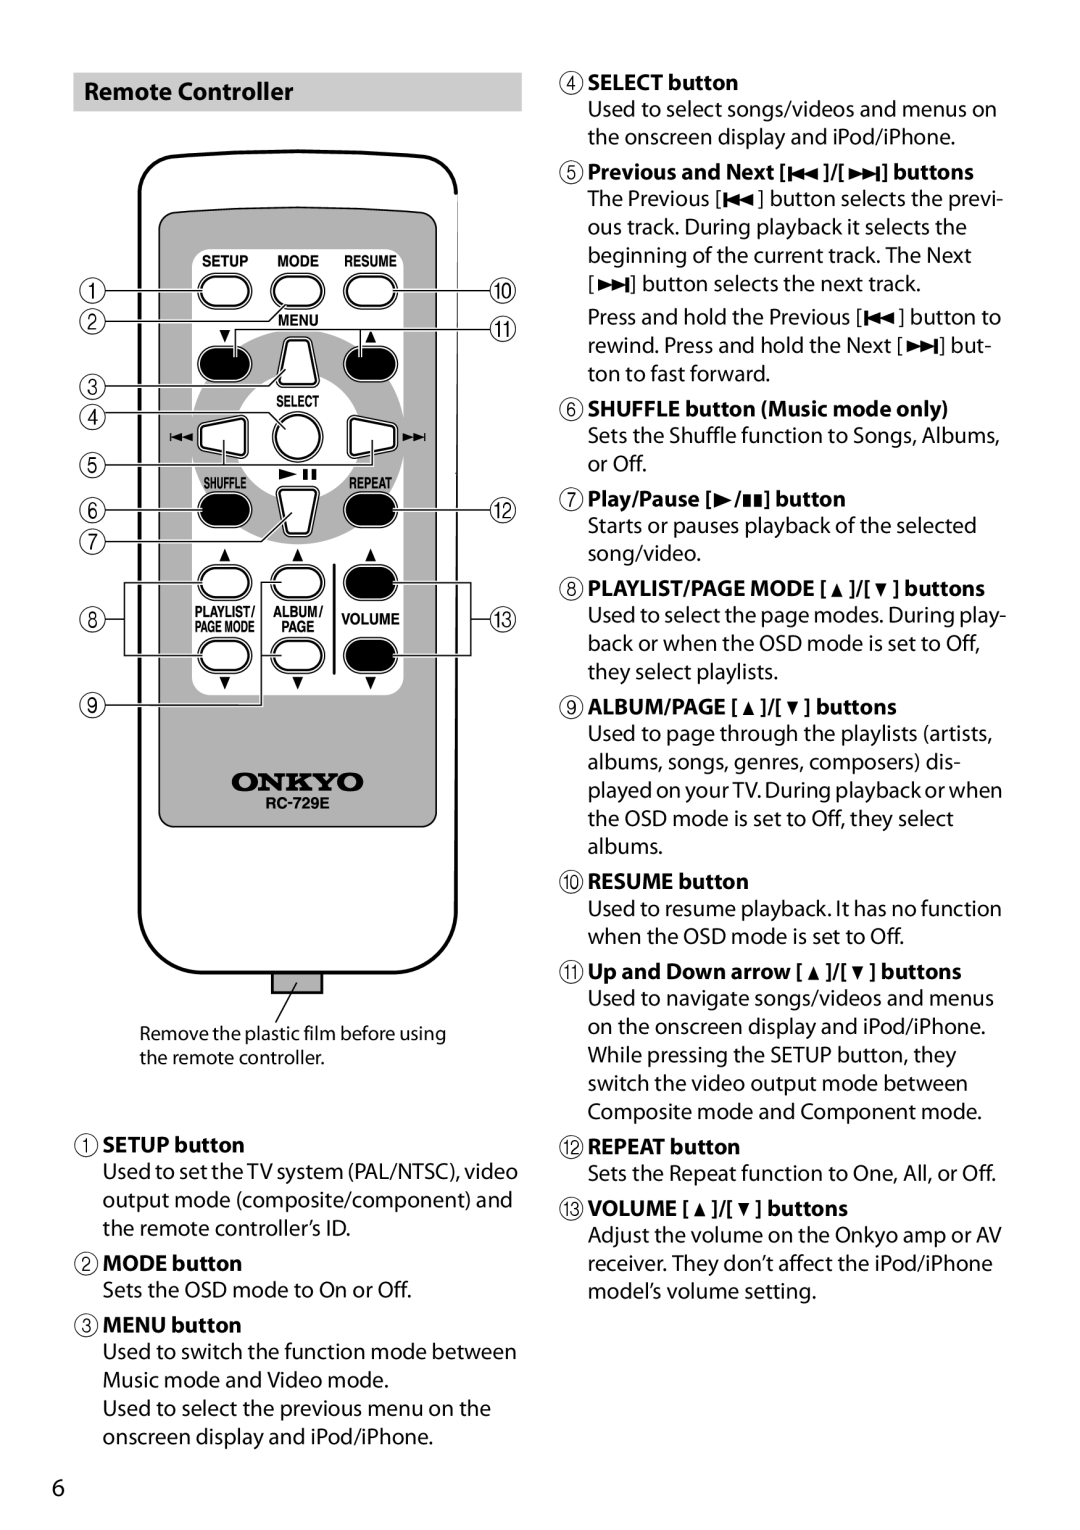 Onkyo DS-A4 Remote Controller, aSETUP button, bMODE button, cMENU button, dSELECT button, ePrevious and Next, buttons 